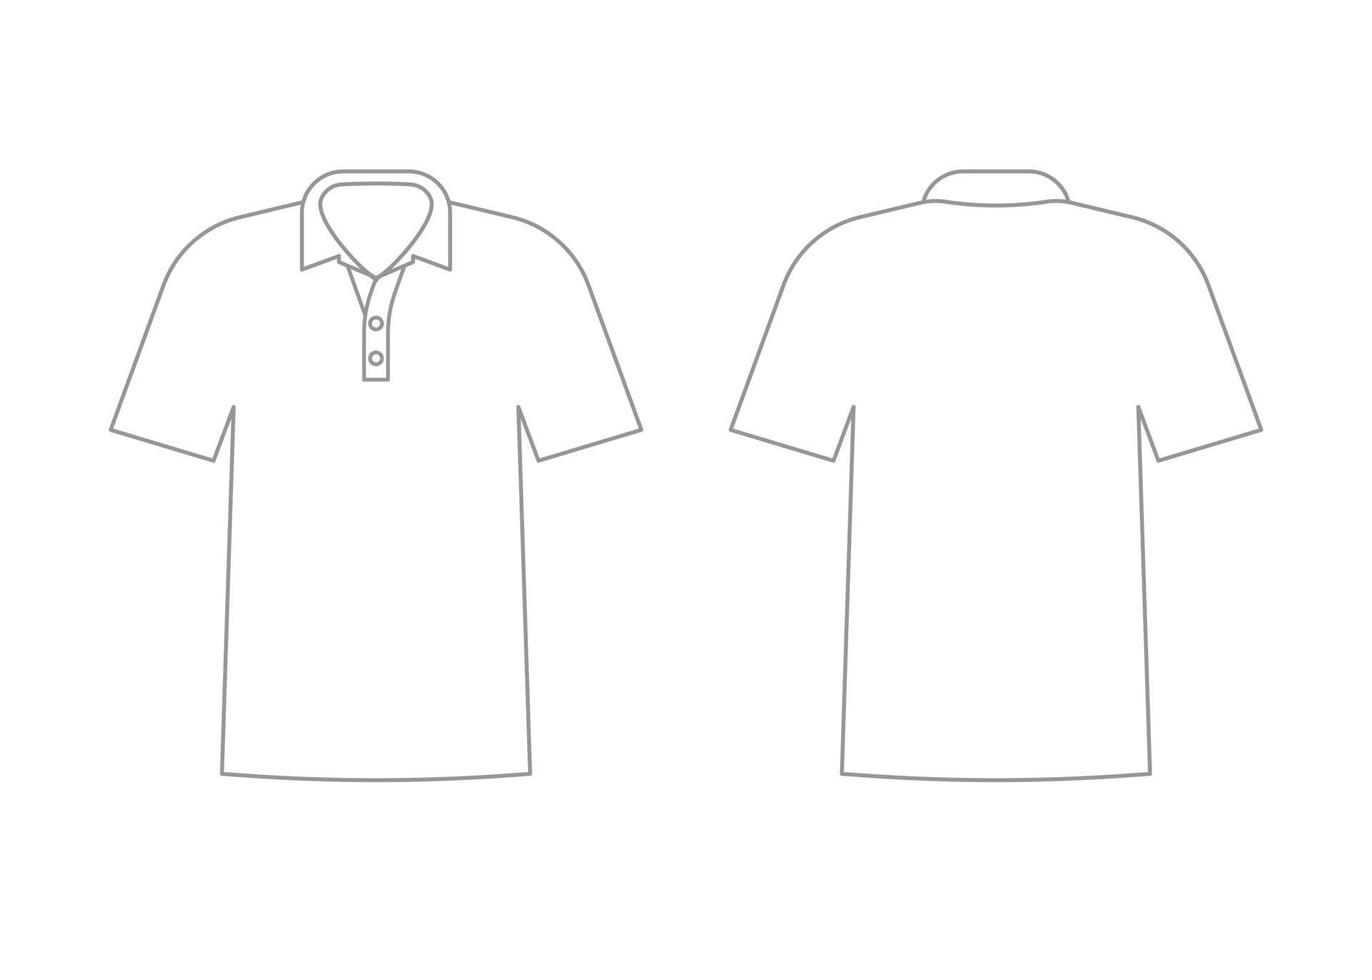 Herren T-Shirt Outline mit kurzen Ärmeln und Polo. Vorder- und Rückansicht vektor